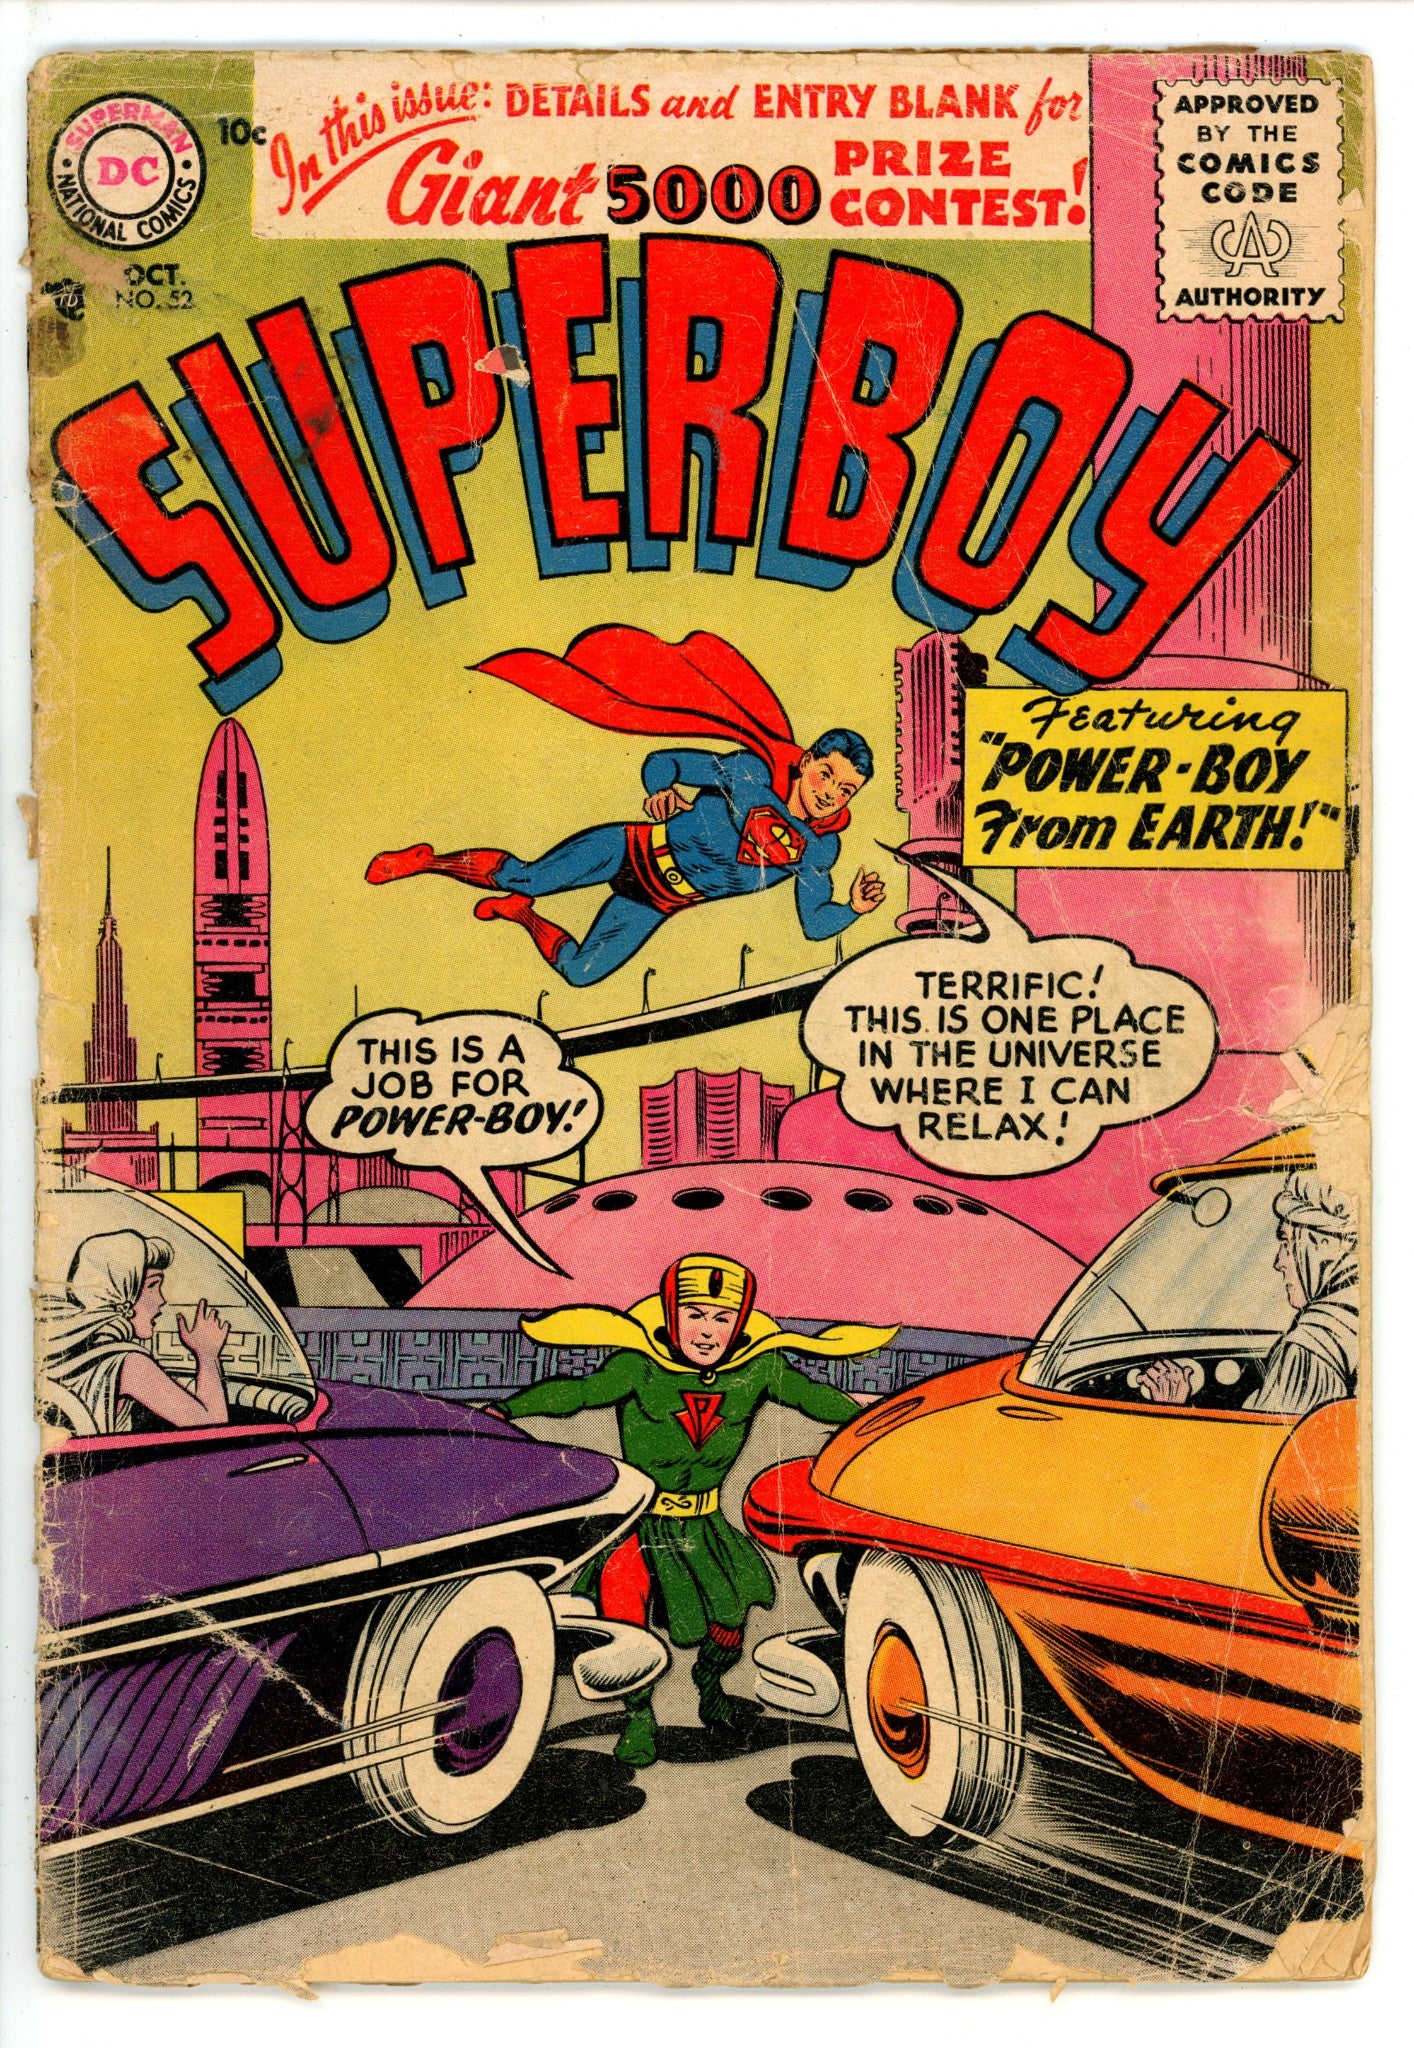 Superboy Vol 1 52 PR